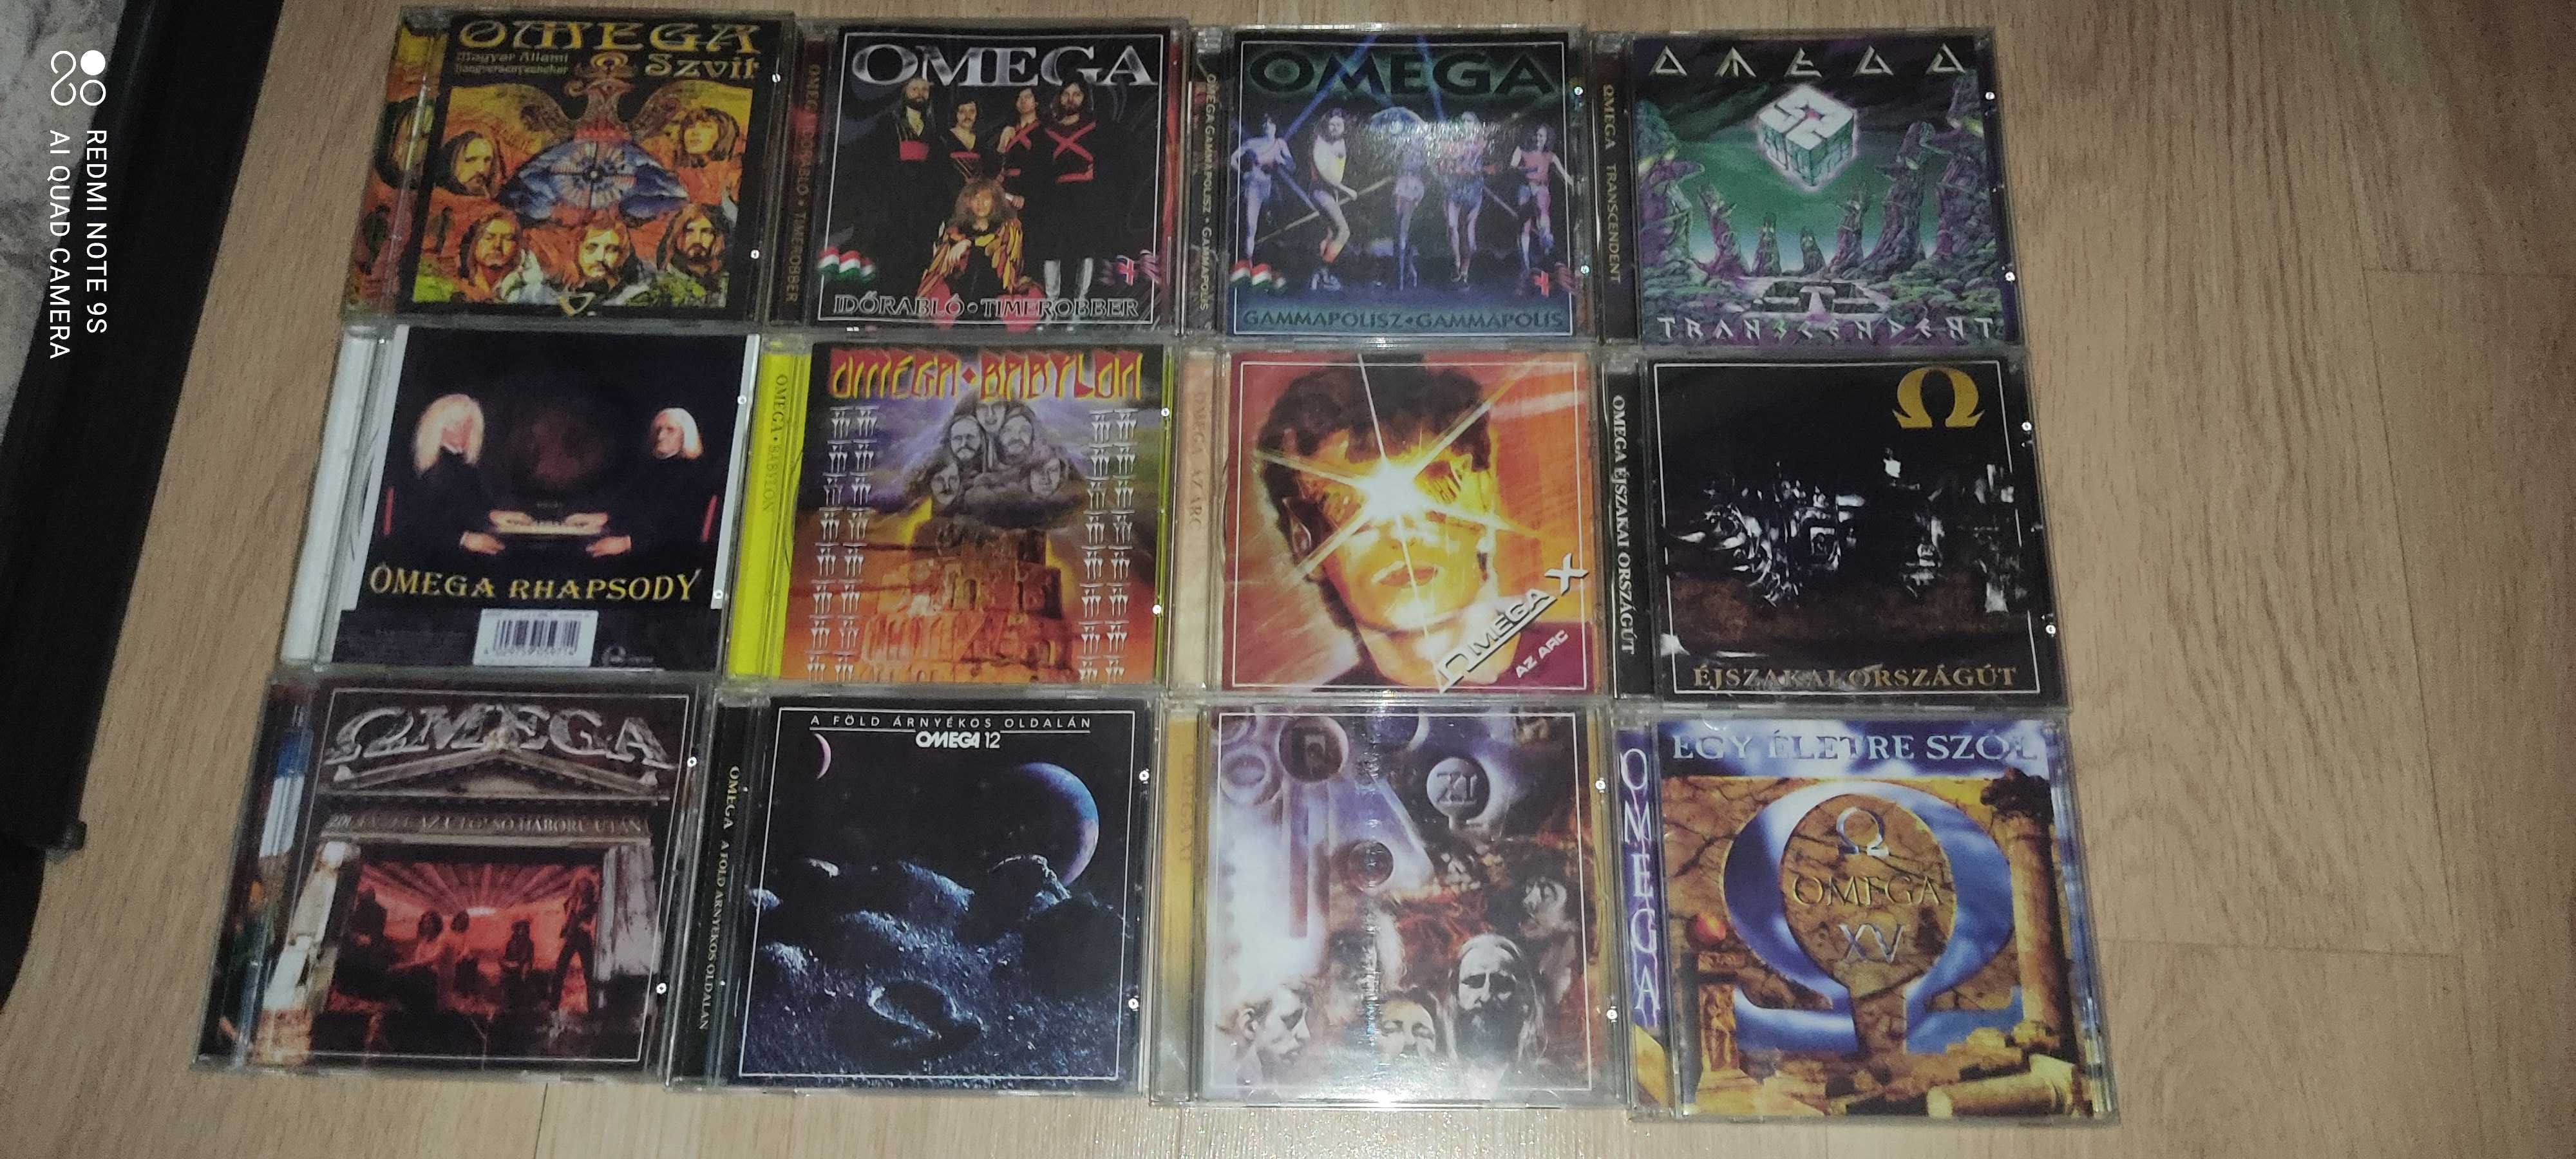 CD/СД диски с музыкой